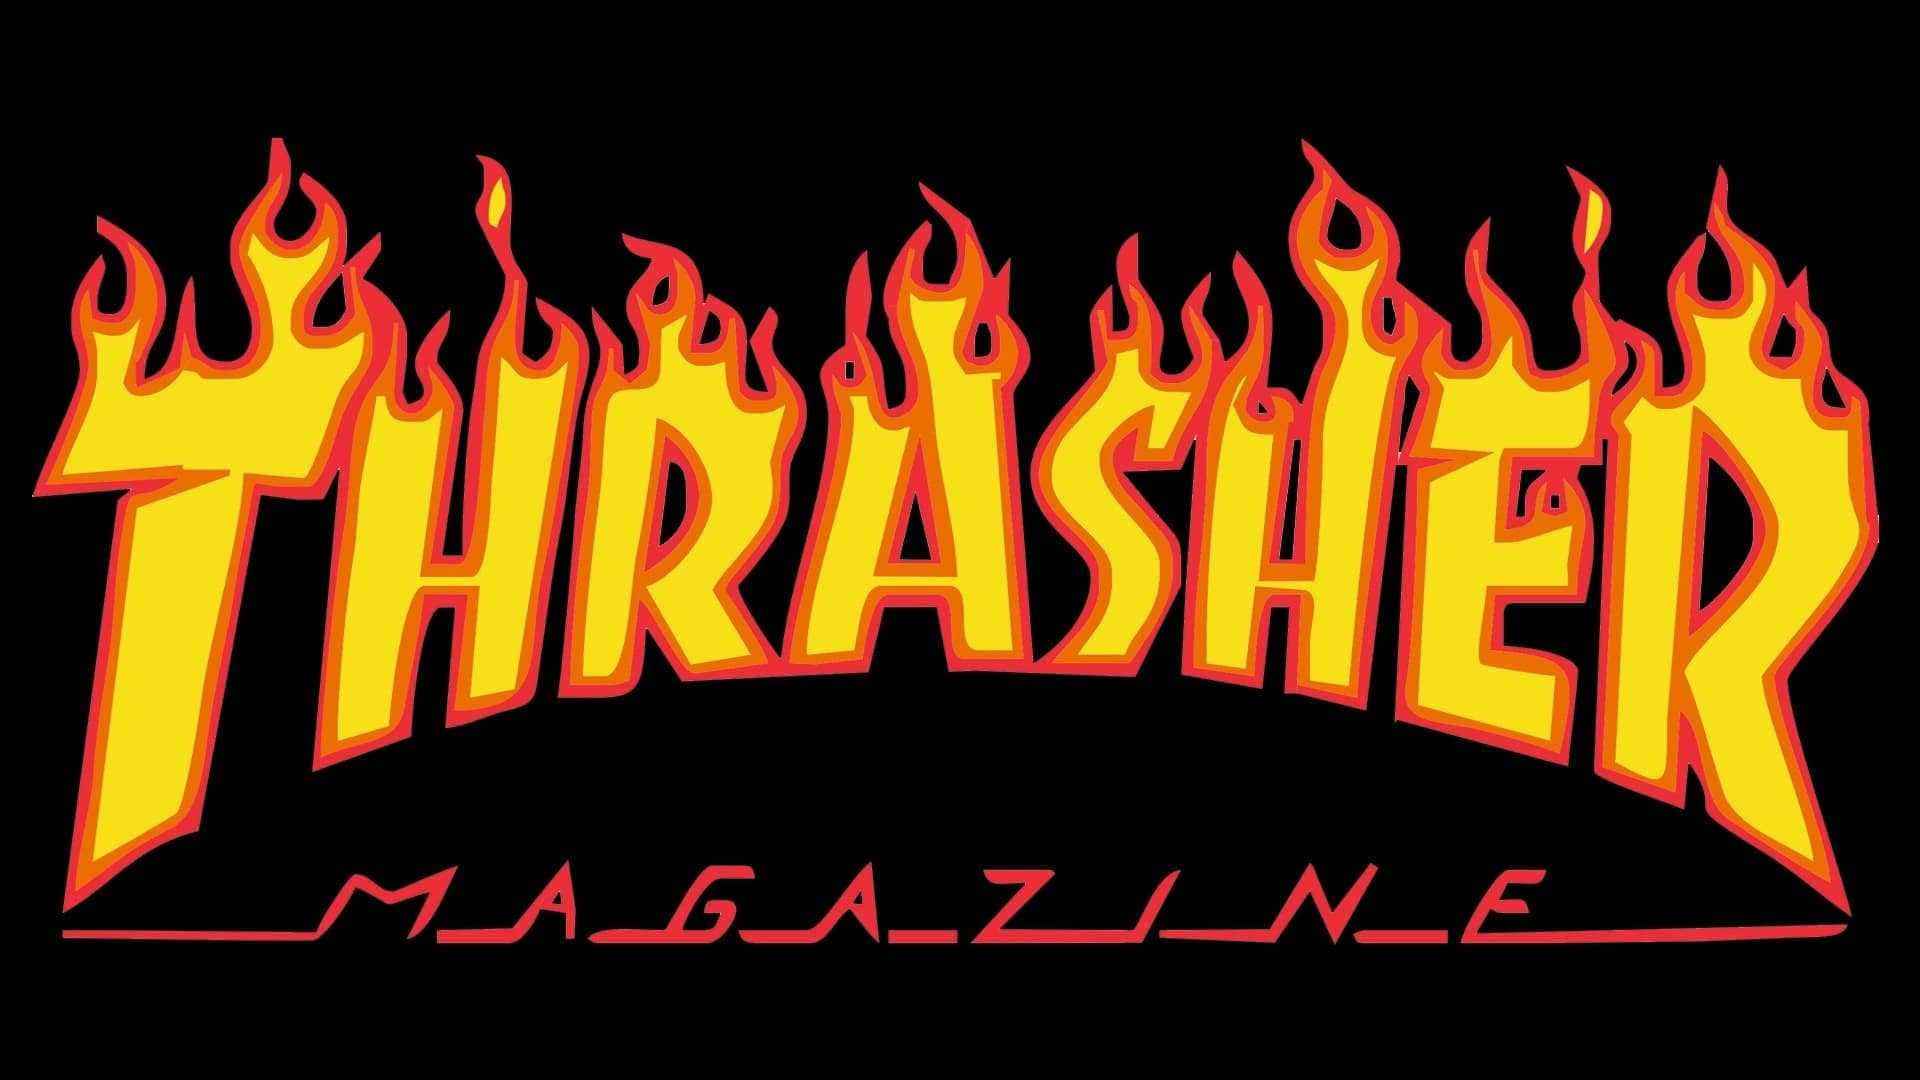 Logotipode La Revista Thrasher Con Llamas